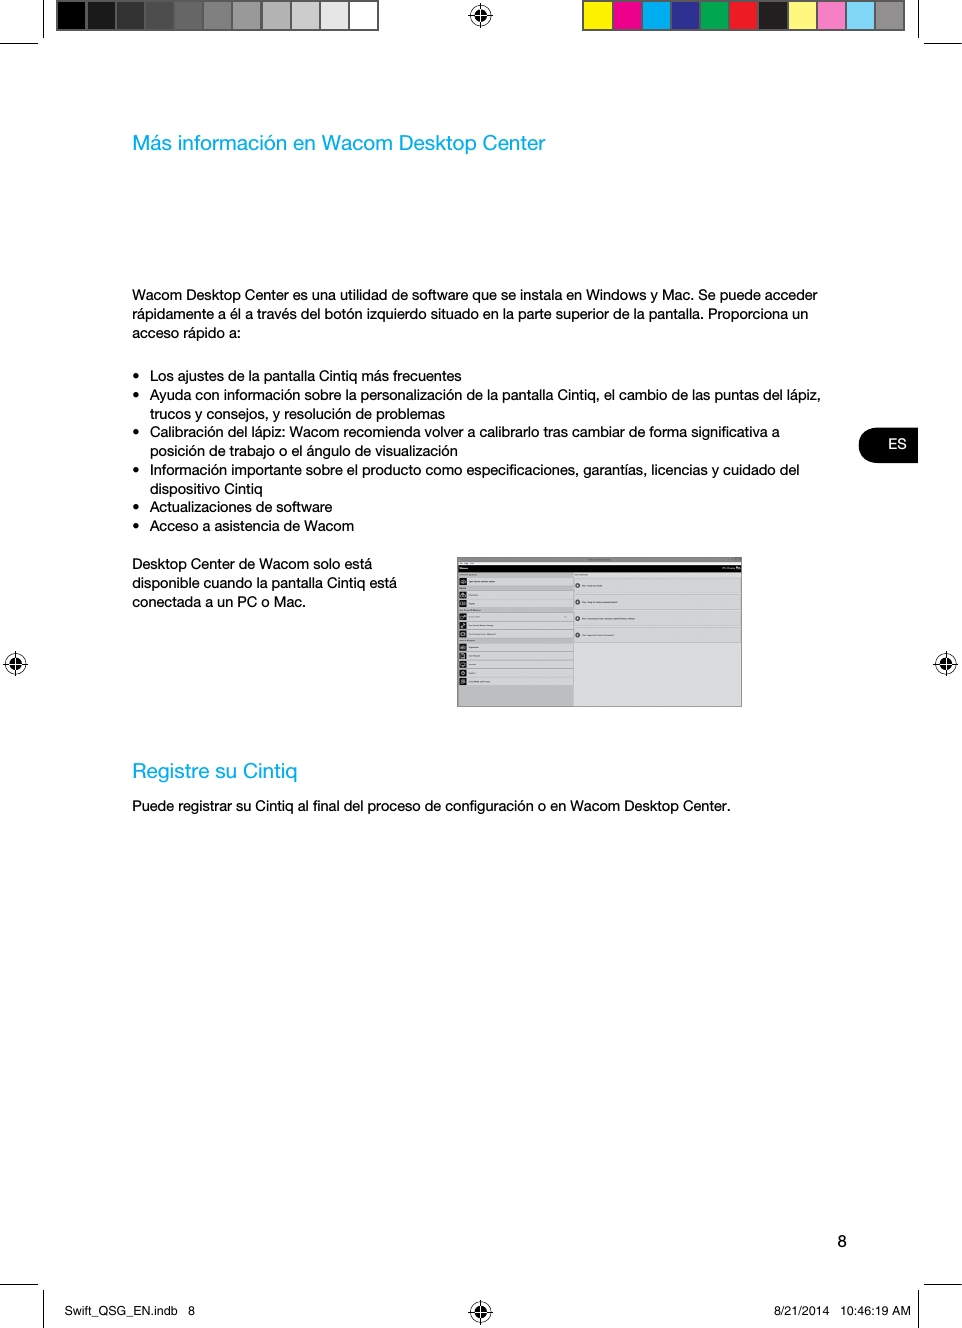 8ESMás información en Wacom Desktop CenterWacom Desktop Center es una utilidad de software que se instala en Windows y Mac. Se puede acceder rápidamente a él a través del botón izquierdo situado en la parte superior de la pantalla. Proporciona un acceso rápido a:•  Los ajustes de la pantalla Cintiq más frecuentes•  Ayuda con información sobre la personalización de la pantalla Cintiq, el cambio de las puntas del lápiz, trucos y consejos, y resolución de problemas•  Calibración del lápiz: Wacom recomienda volver a calibrarlo tras cambiar de forma signiﬁcativa a posición de trabajo o el ángulo de visualización•  Información importante sobre el producto como especiﬁcaciones, garantías, licencias y cuidado del dispositivo Cintiq•  Actualizaciones de software•  Acceso a asistencia de WacomDesktop Center de Wacom solo está disponible cuando la pantalla Cintiq está conectada a un PC o Mac.Registre su CintiqPuede registrar su Cintiq al ﬁnal del proceso de conﬁguración o en Wacom Desktop Center.Swift_QSG_EN.indb   8 8/21/2014   10:46:19 AM